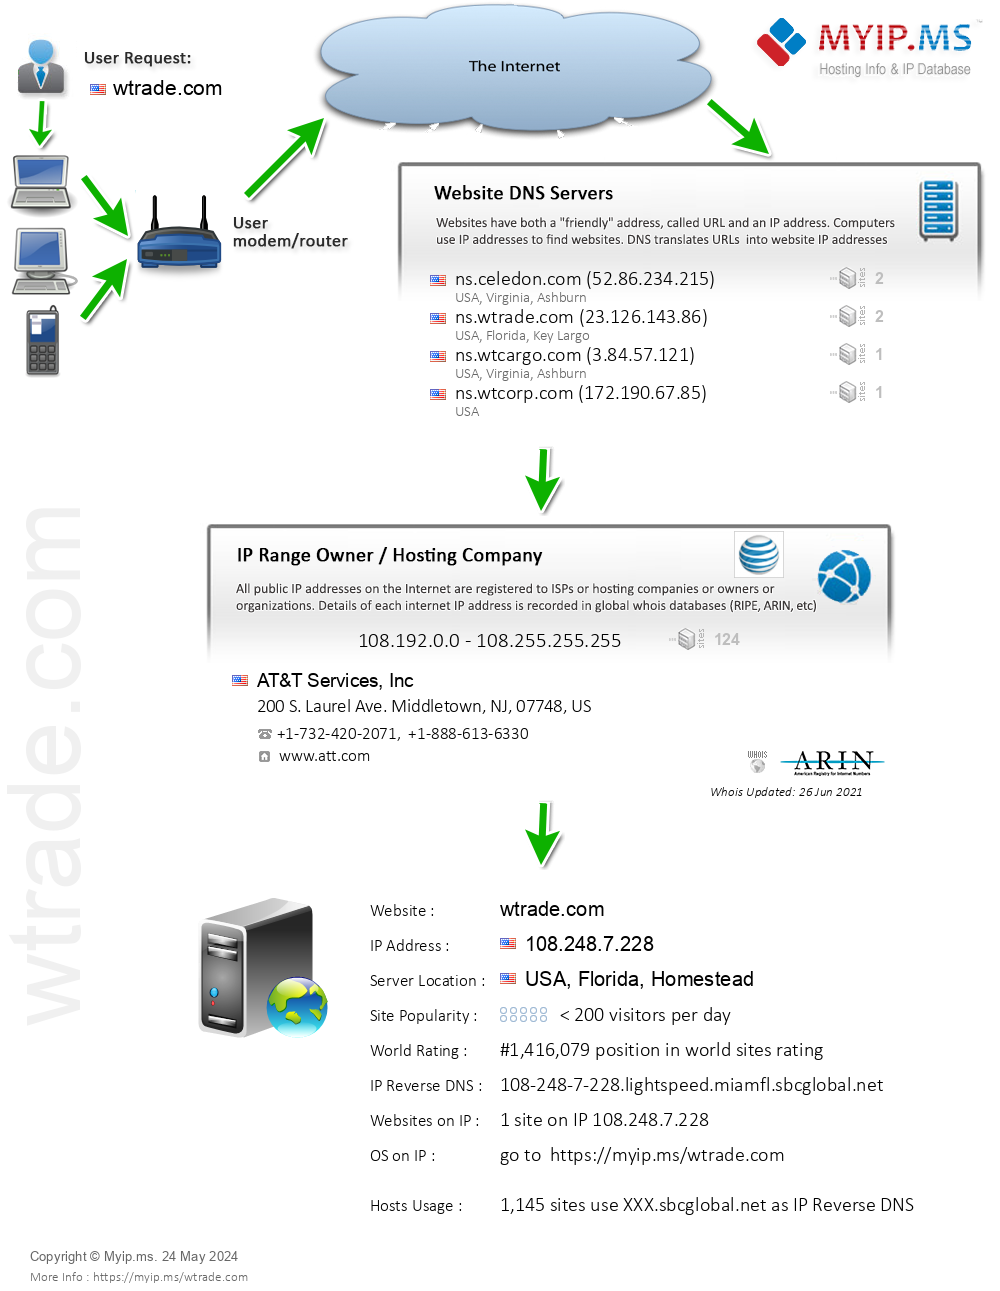 Wtrade.com - Website Hosting Visual IP Diagram